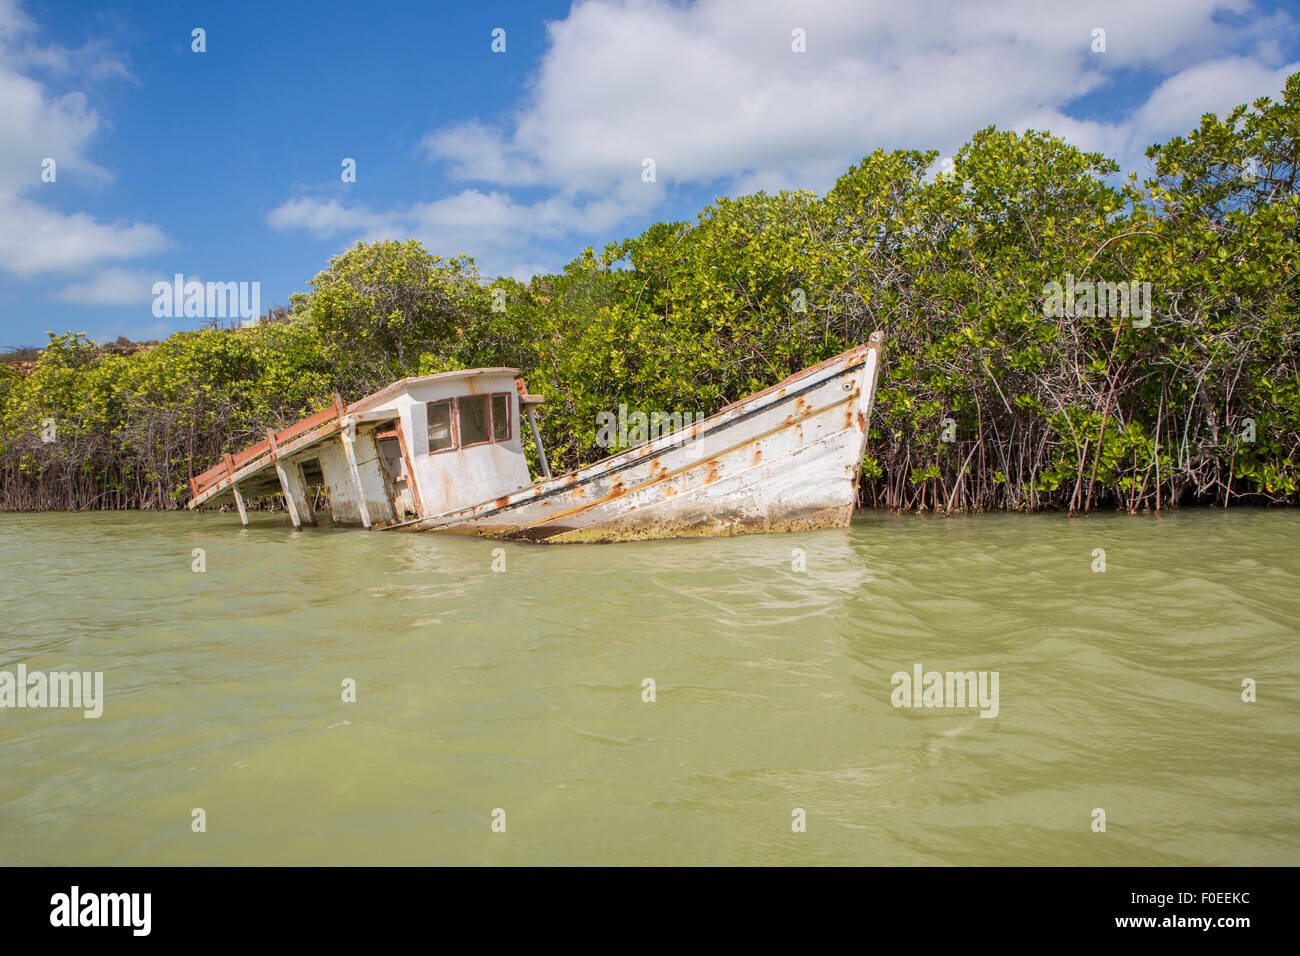 Petit bateau de pêche amarré à Punta Gallinas avec ciel bleu en arrière-plan, La Guajira Colombie 2014. Banque D'Images